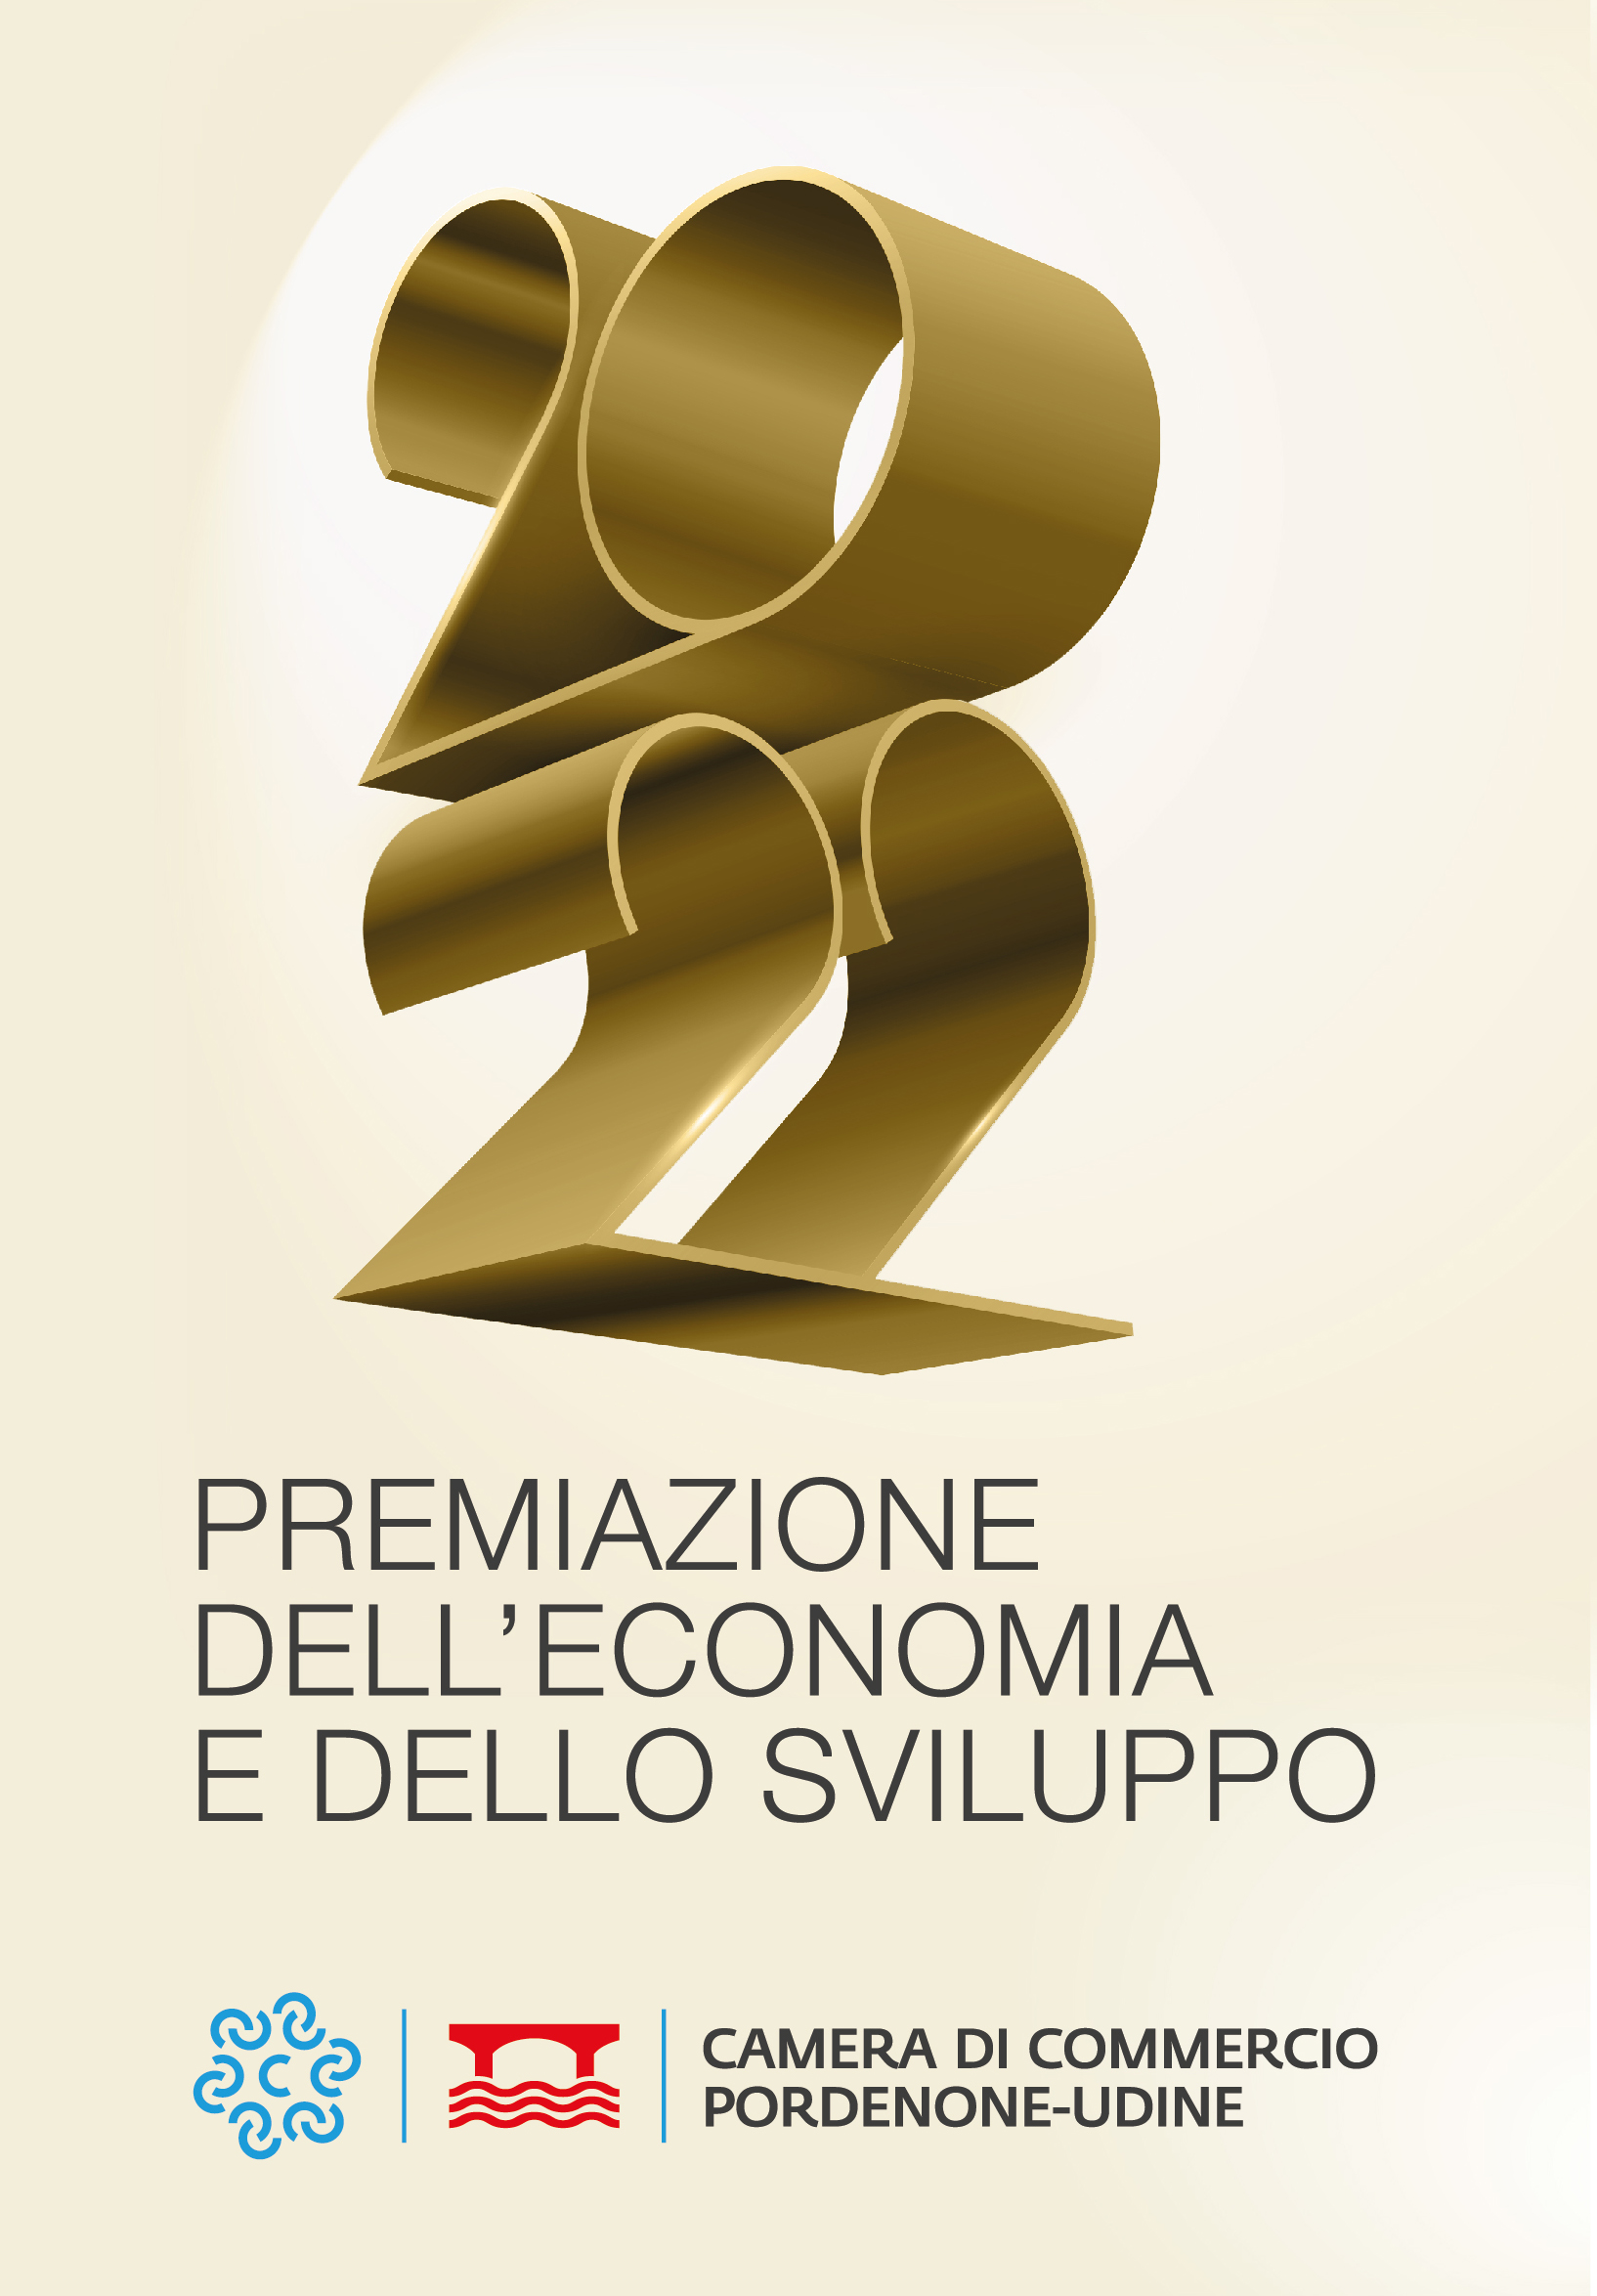 Premiazione dell'economia e dello sviluppo . Camera di commercio Pordenone-Udine